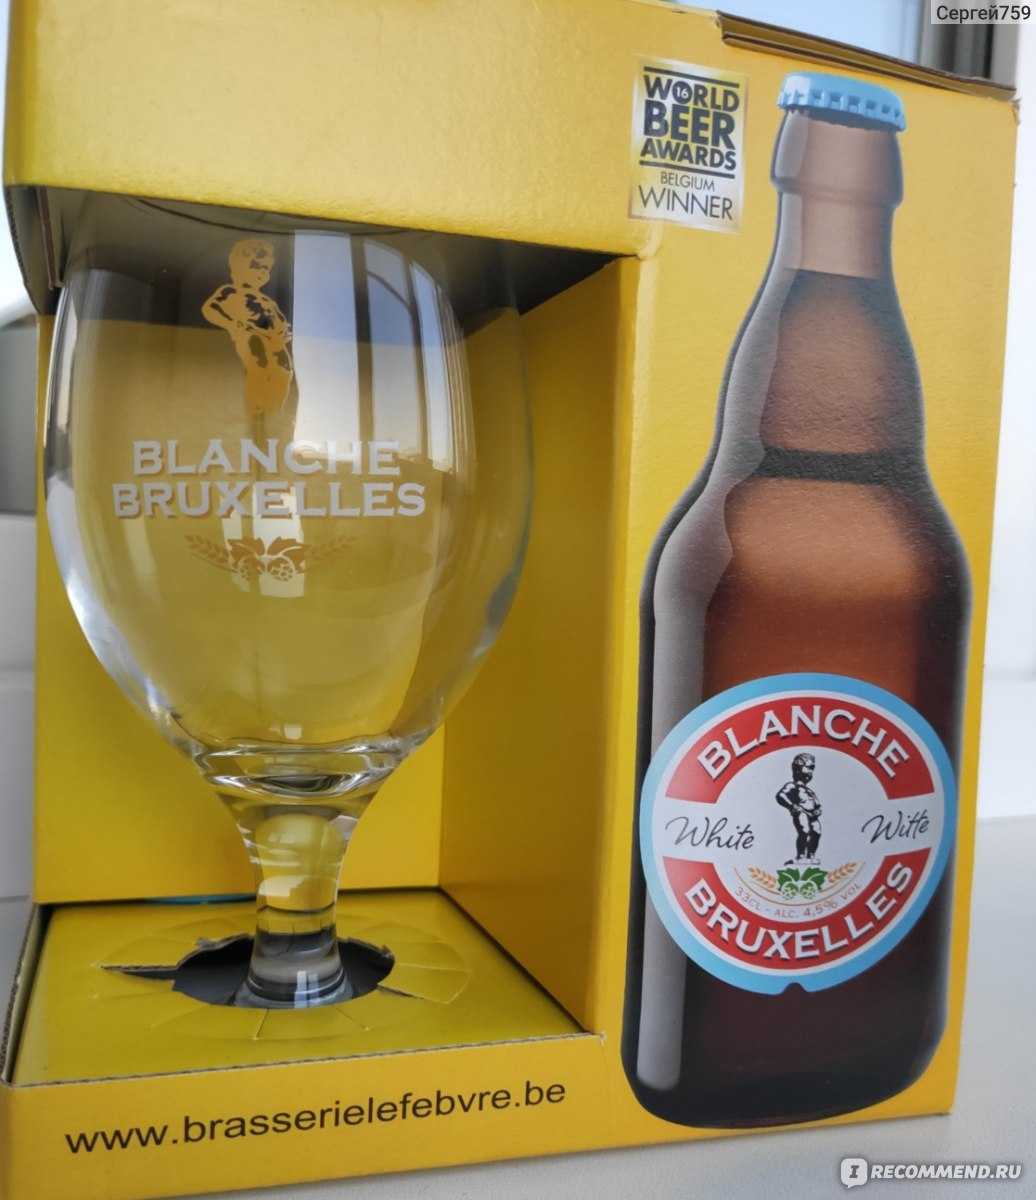 Пиво бланш де брюссель (blanche de bruxelles) — особенности и стоимость напитка, отзывы покупателей